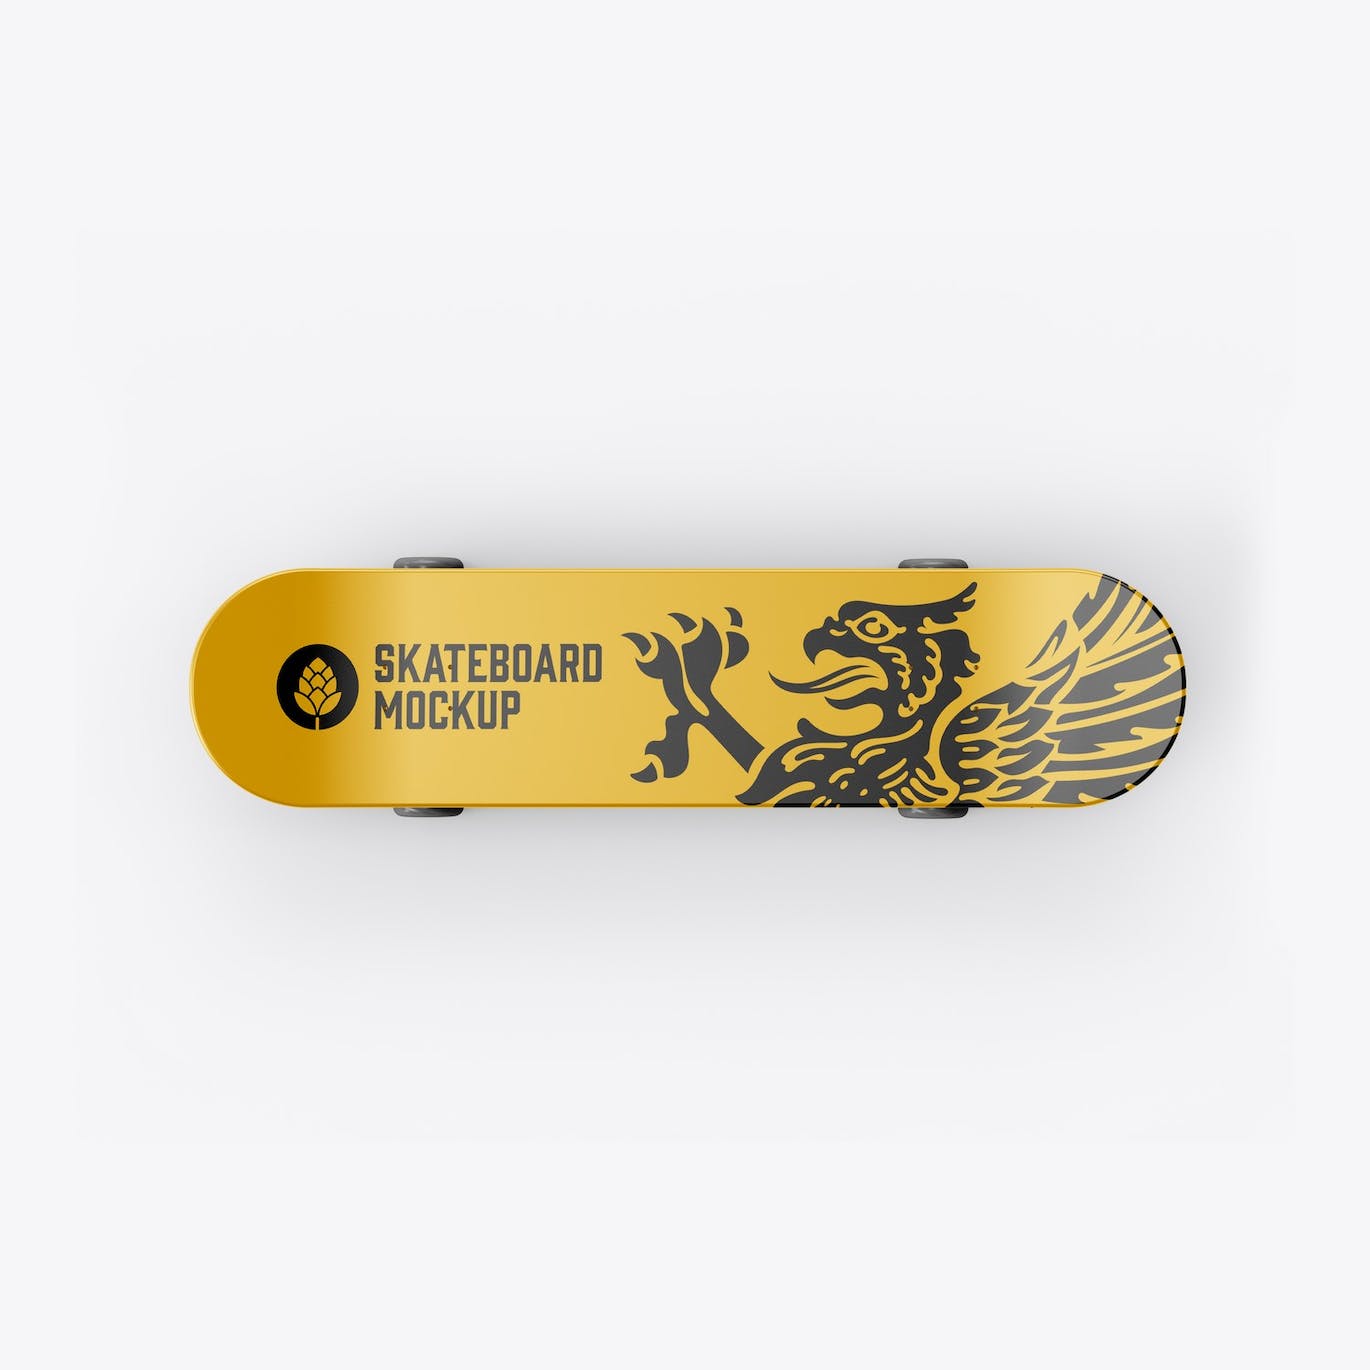 骑行滑板品牌设计样机 Skateboard Mockup 样机素材 第6张